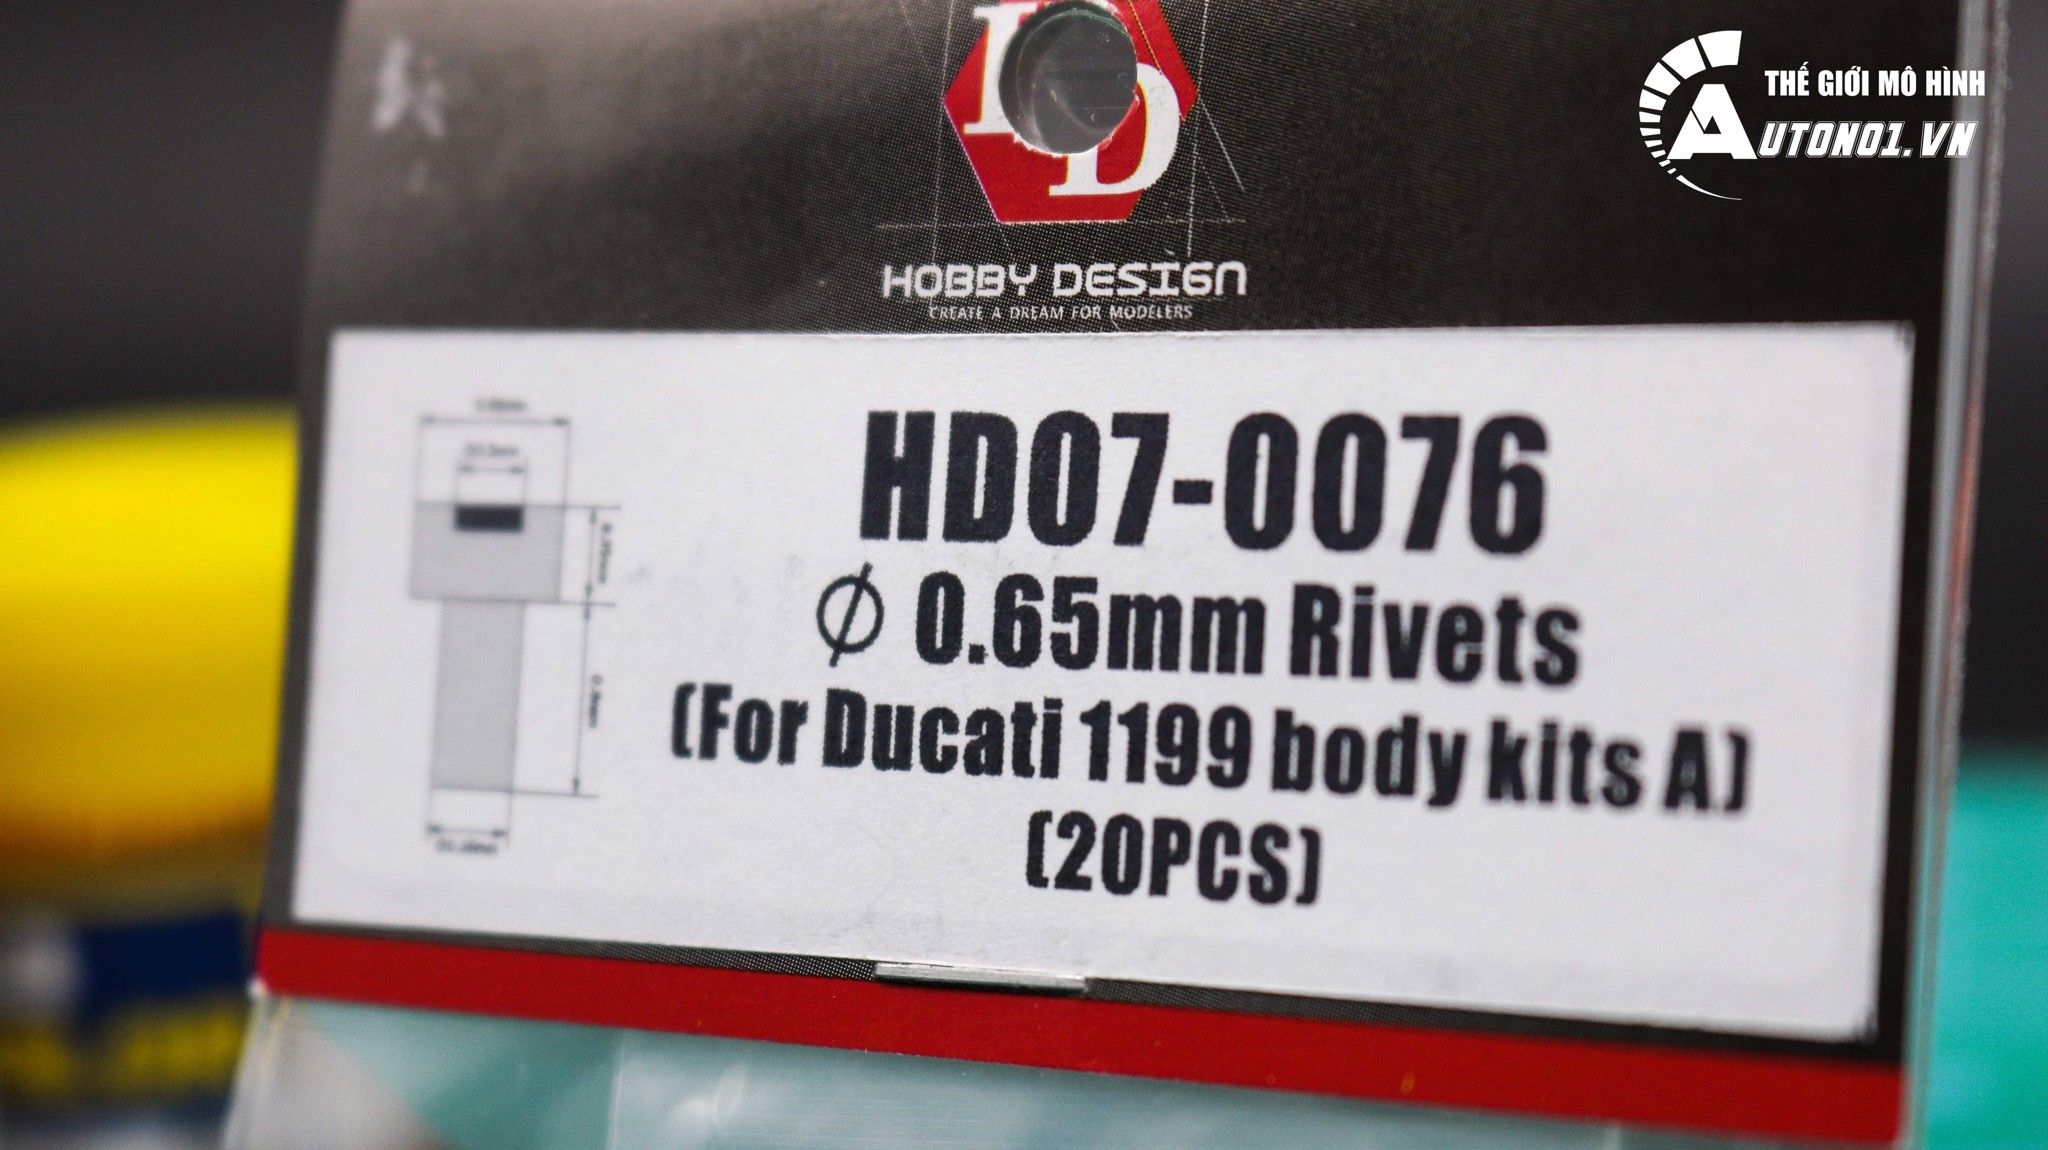  Phụ kiện ốc kim loại cho dàn áo Ducati 1199 0.65mm hd07-0076 Top Studio 7299 